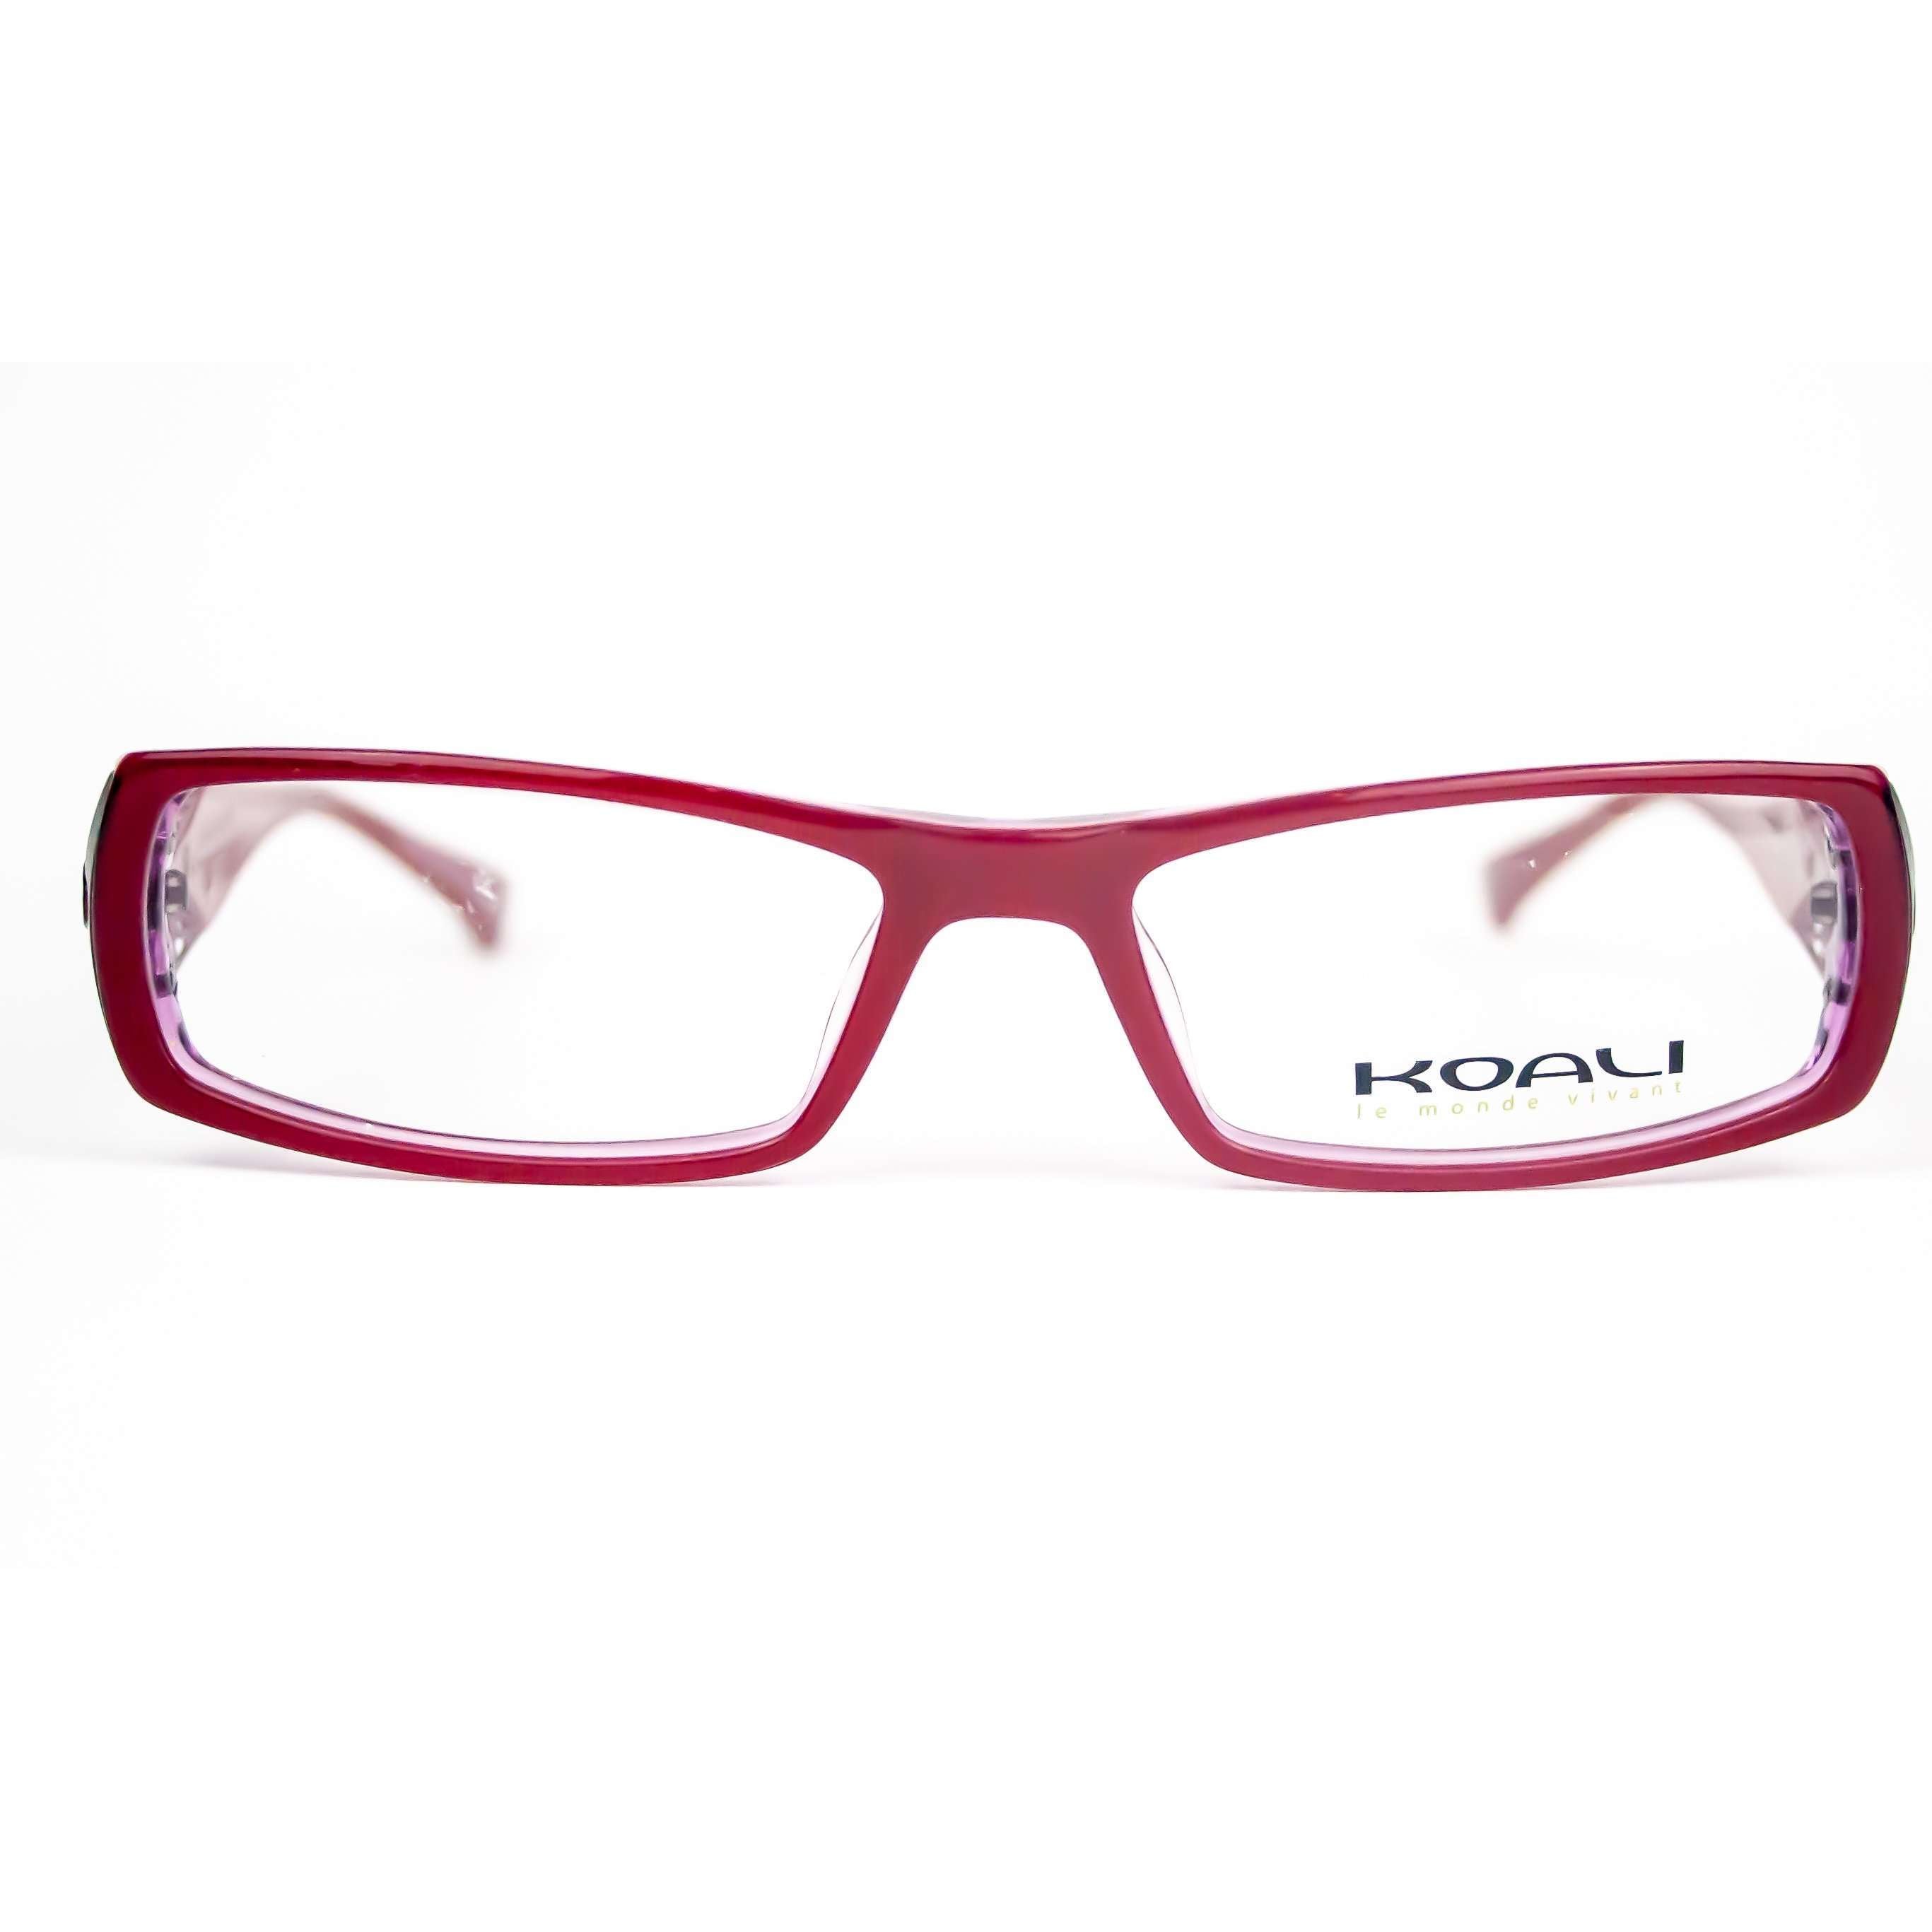 Koali Morel Model 6569K metal rectangular Glasses